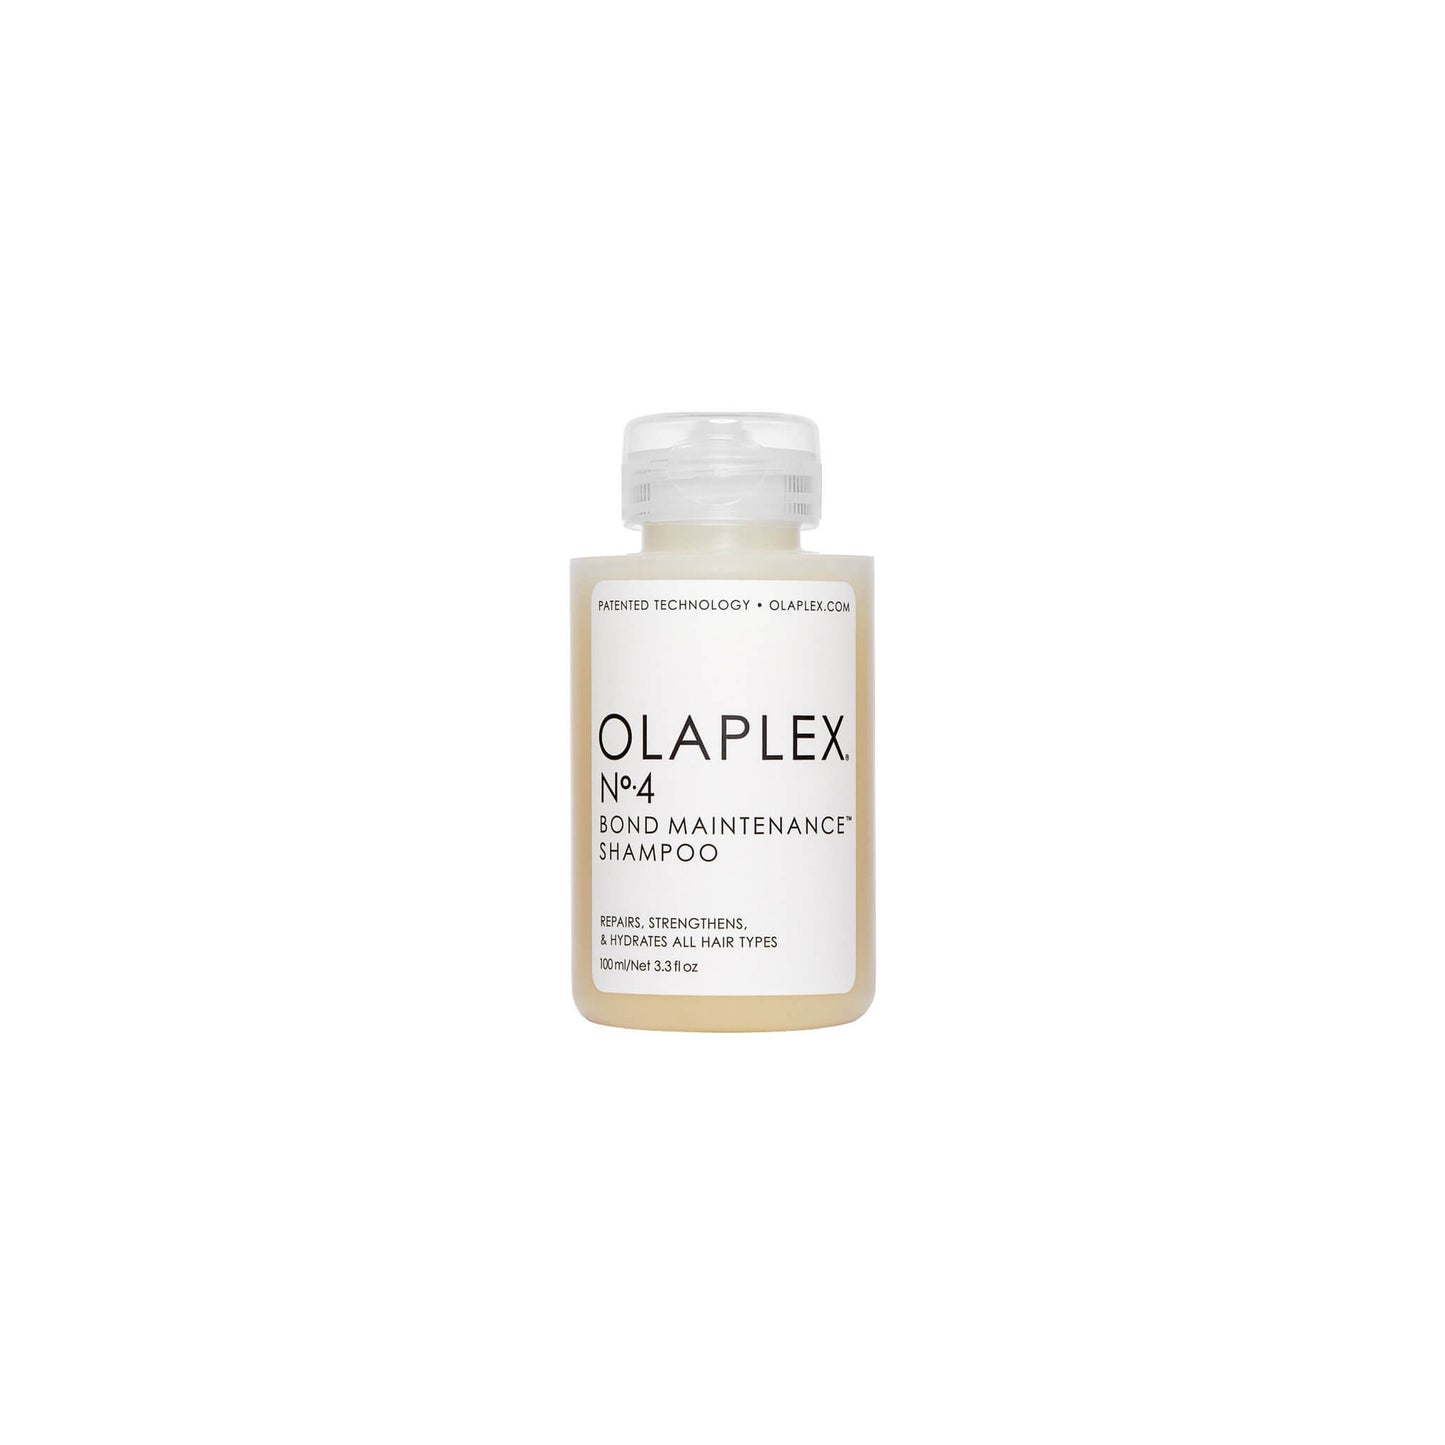 OLAPLEX Shampoo No.4